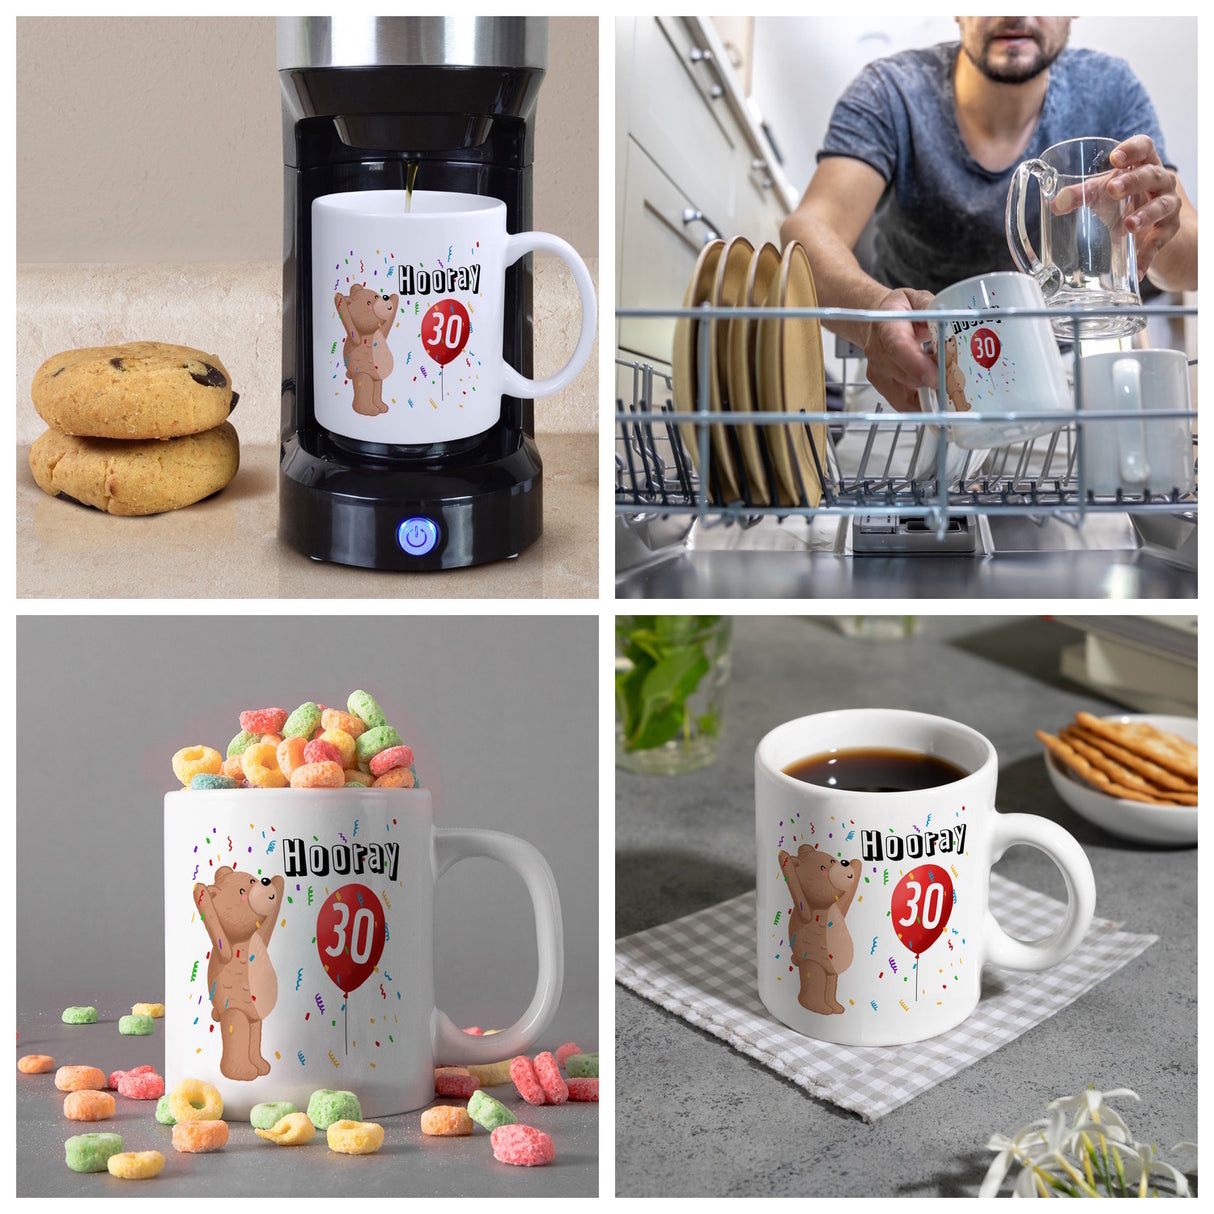 Kaffeebecher für den 30. Geburtstag mit Motiv: Hooray